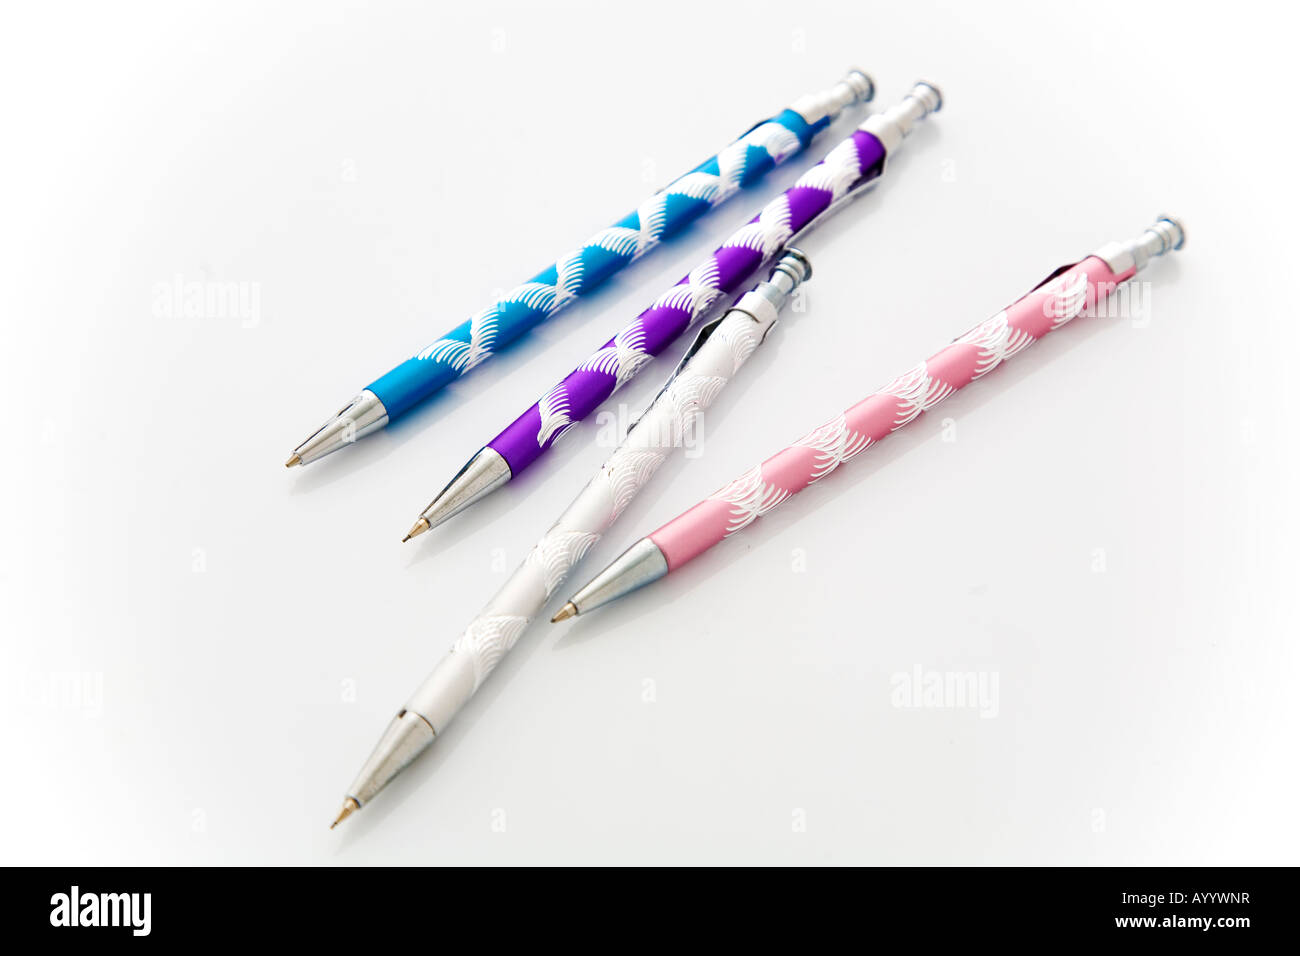 Les stylos de couleur, des stylos, des instruments d'écriture Banque D'Images